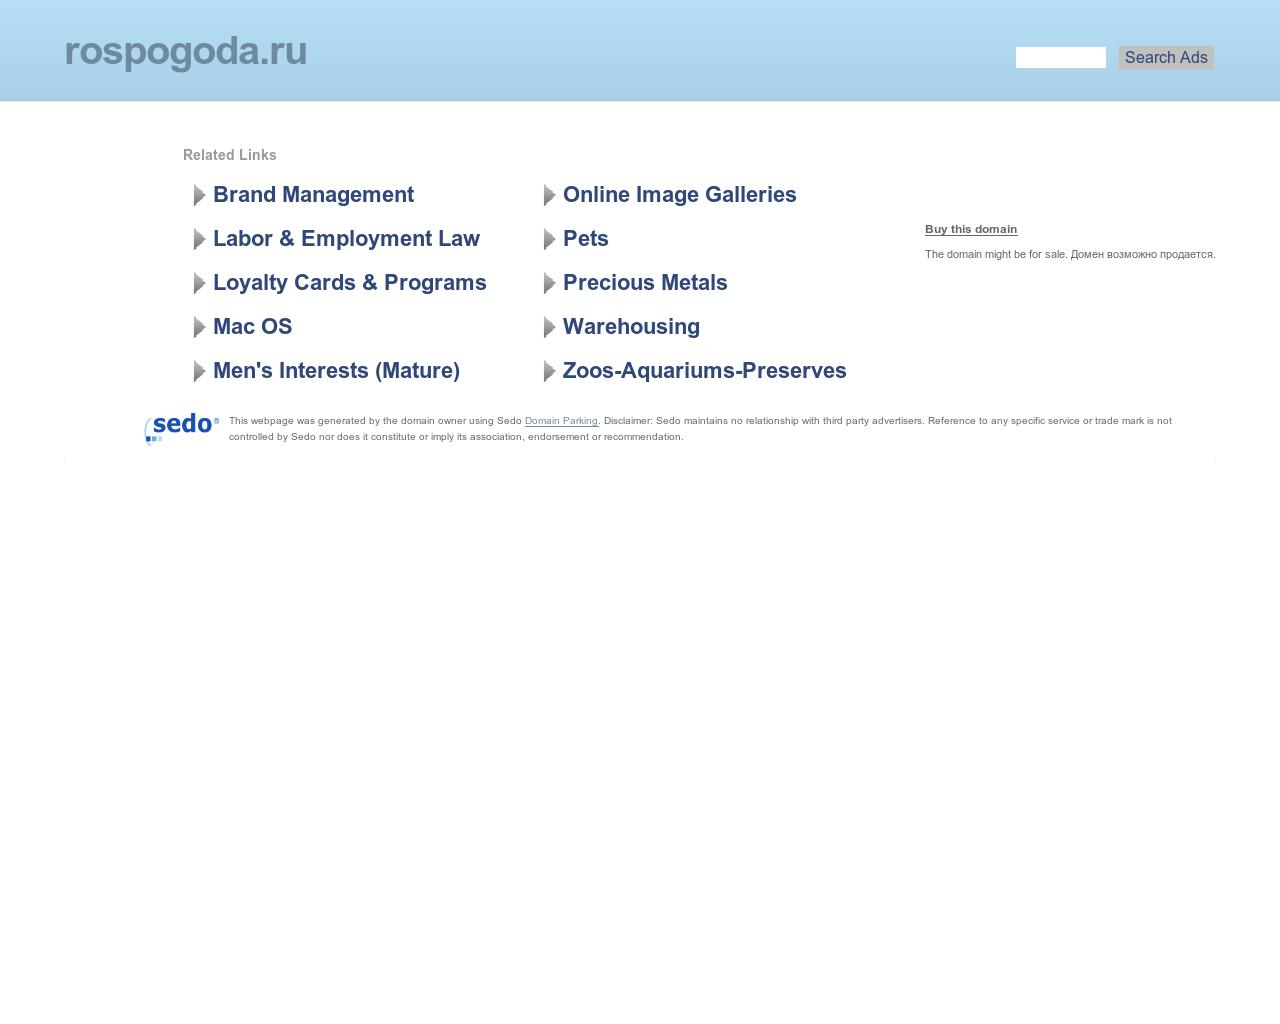 Изображение сайта rospogoda.ru в разрешении 1280x1024